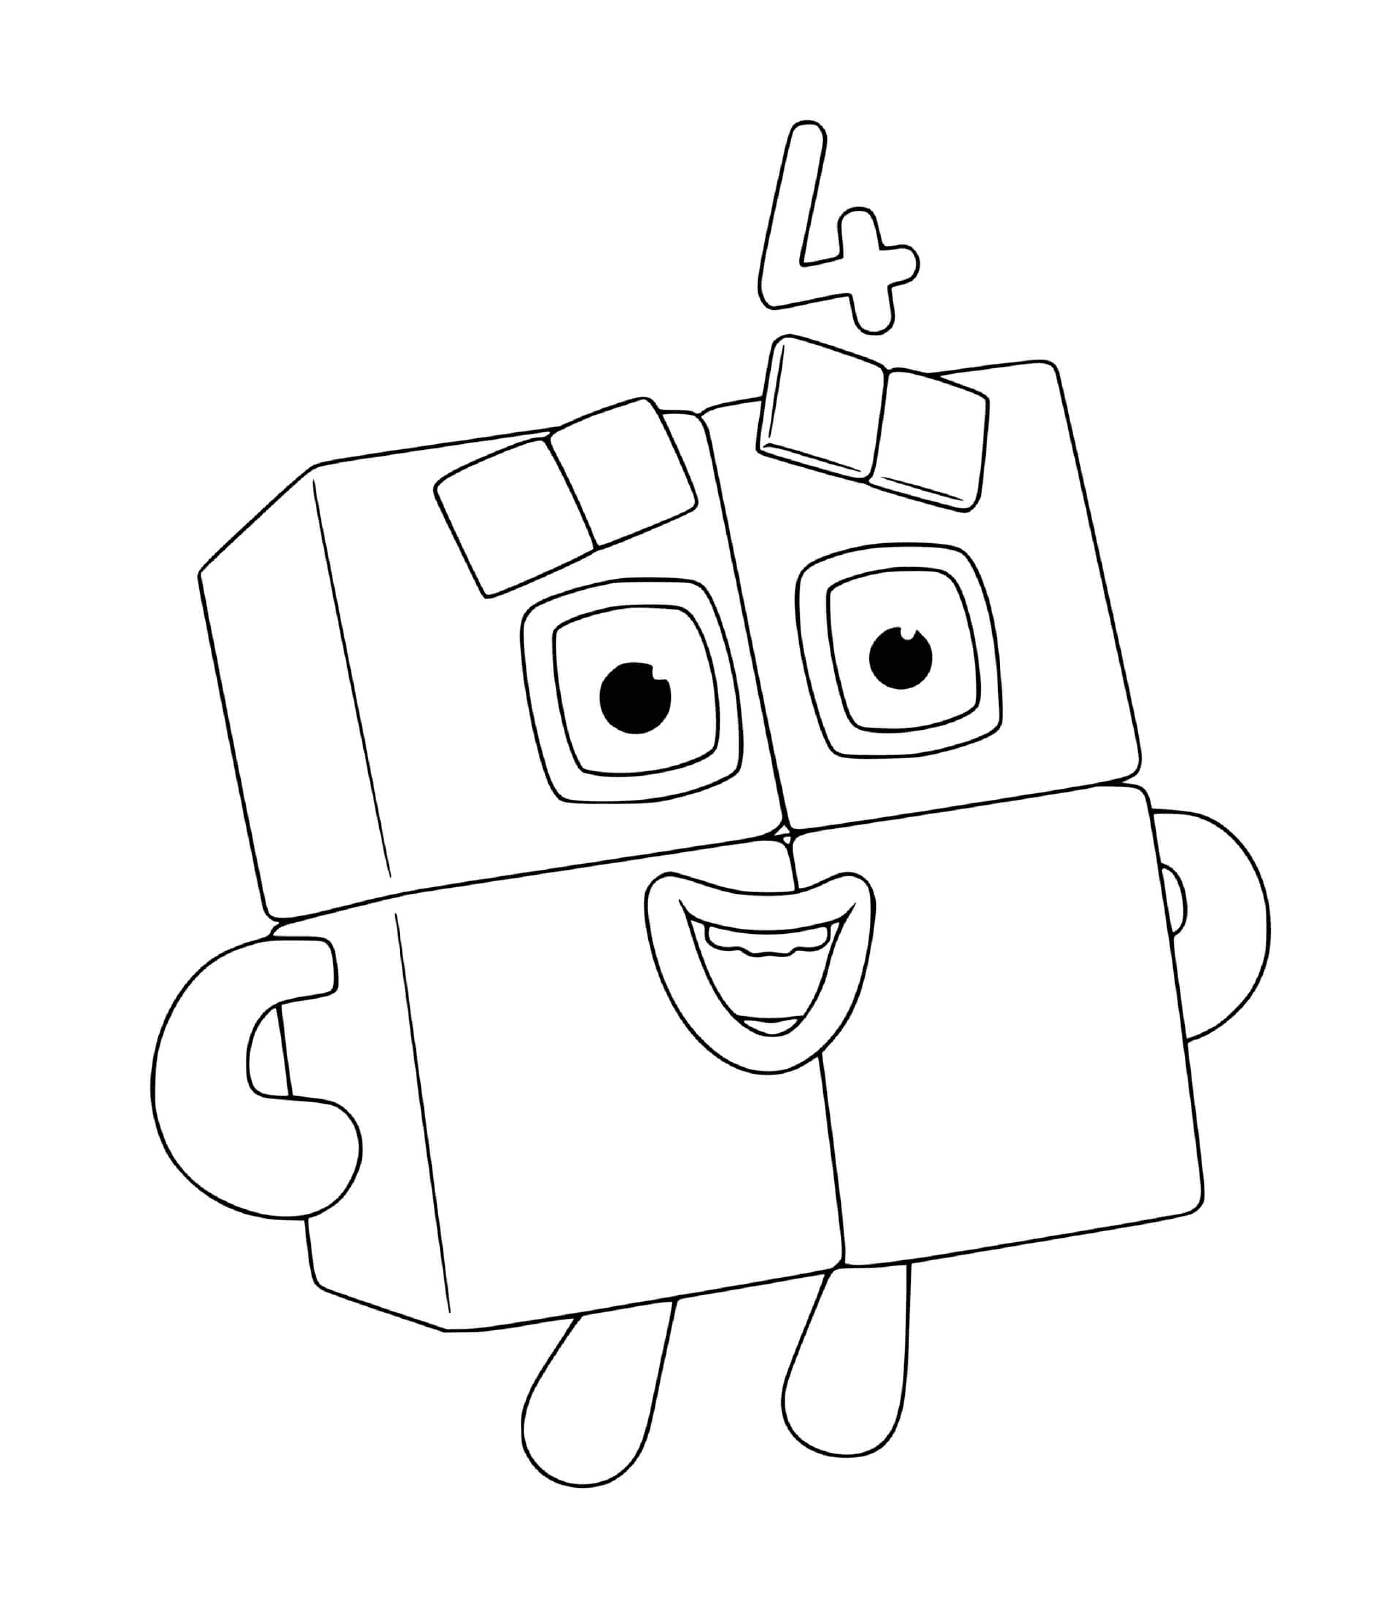  Numberblocks número 4, un robot de juguete 